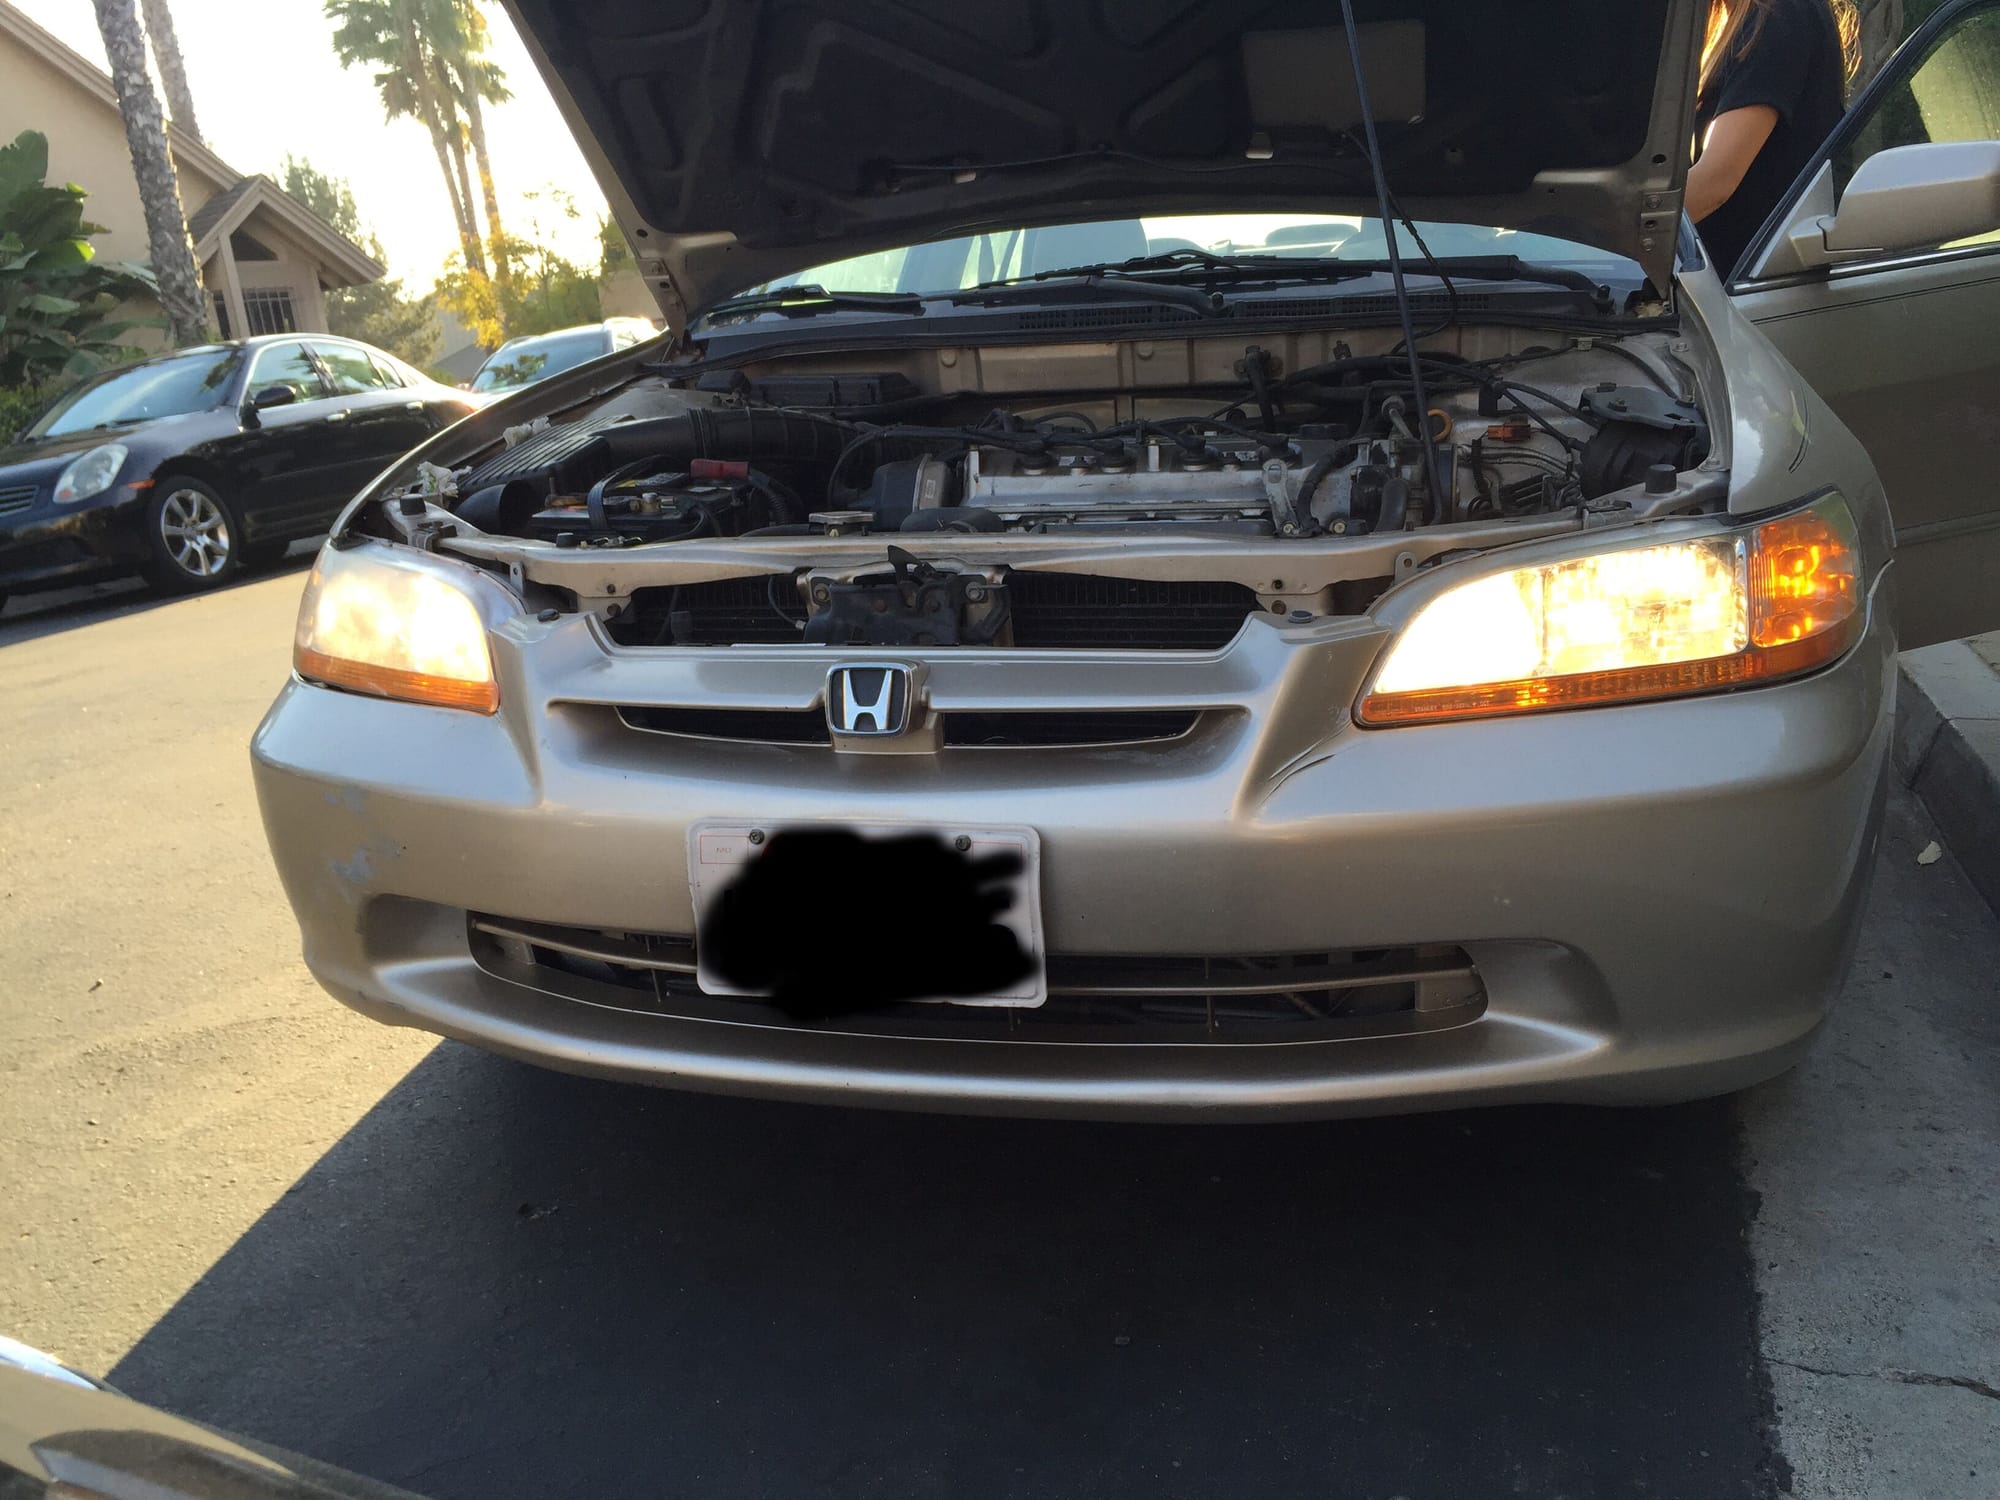 99 Honda accord headlights not working